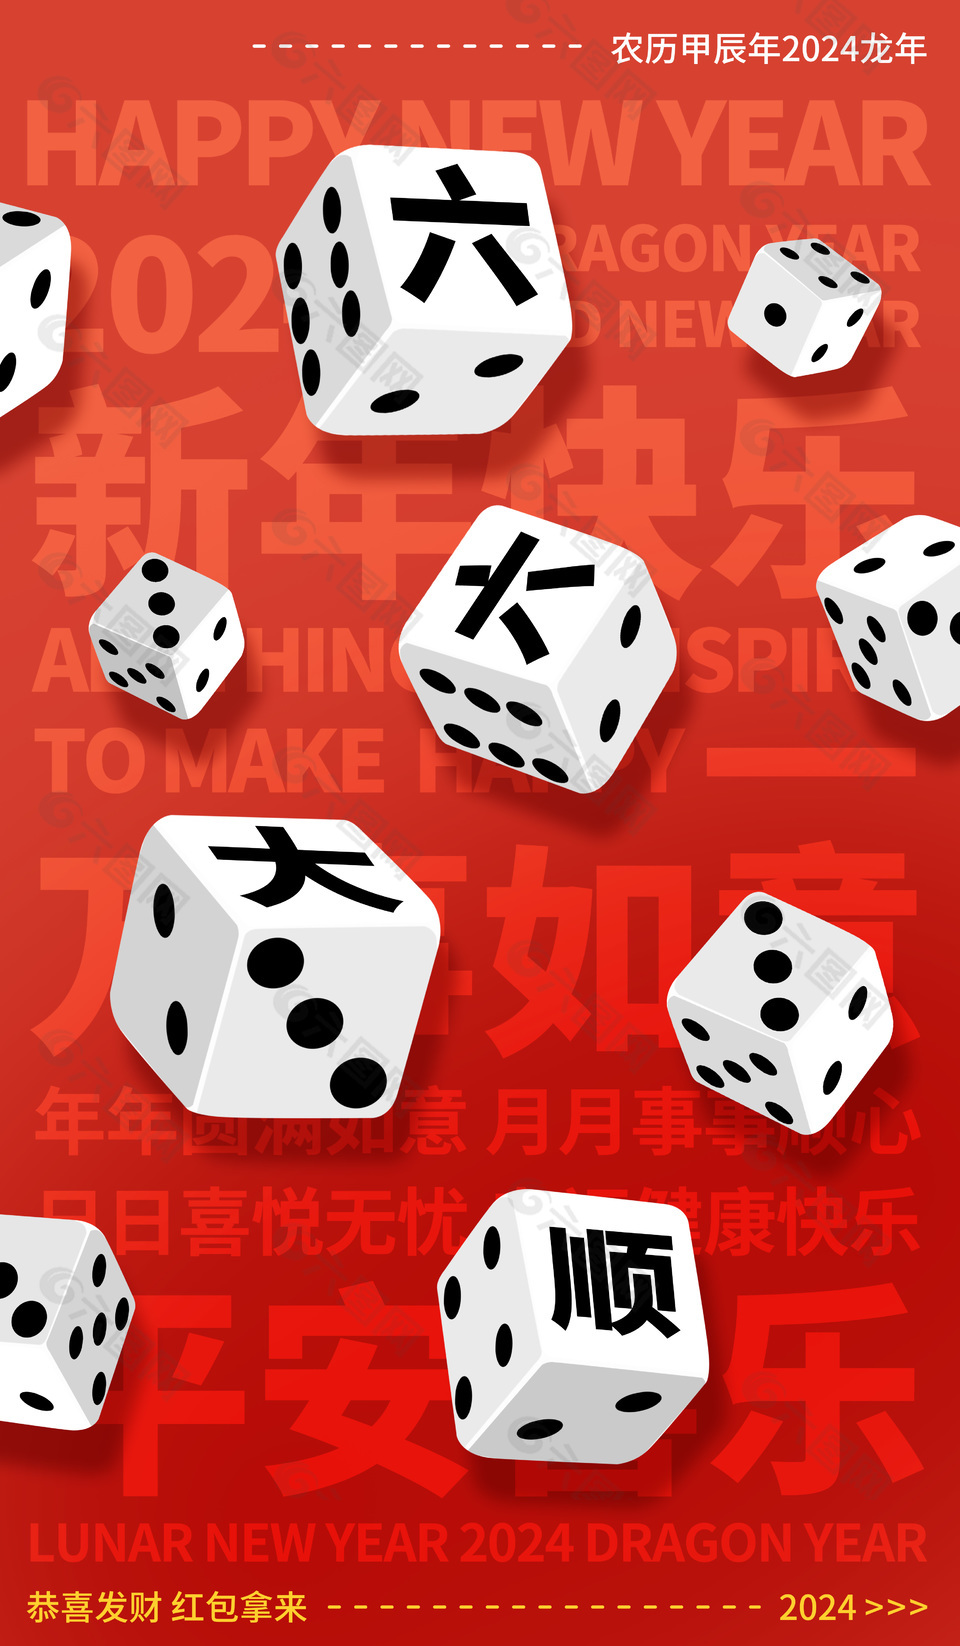 六六大顺创意骰子元素龙年海报设计